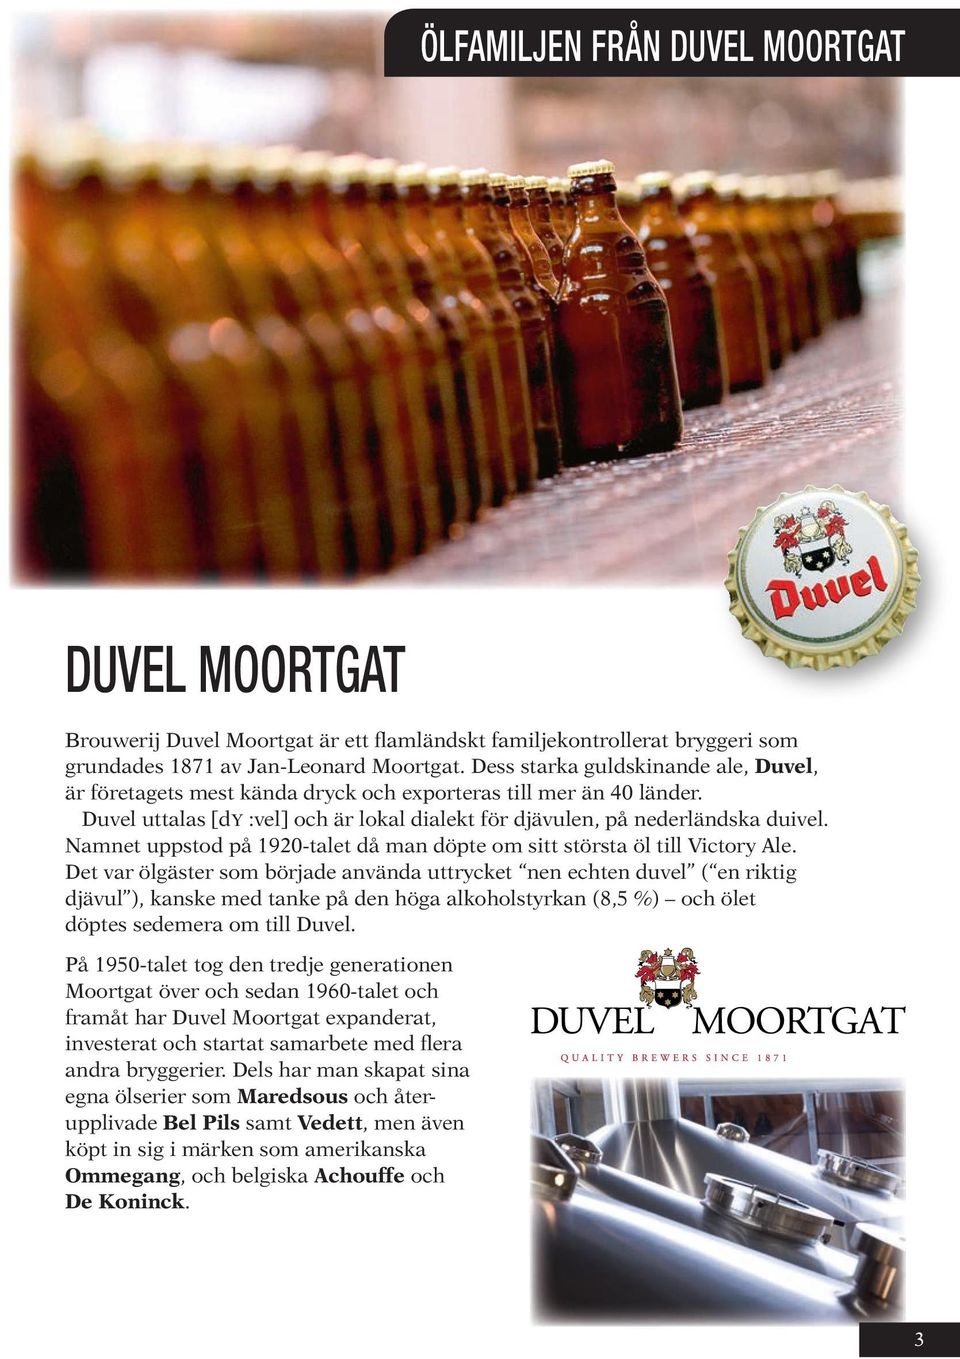 Namnet uppstod på 1920-talet då man döpte om sitt största öl till Victory Ale.